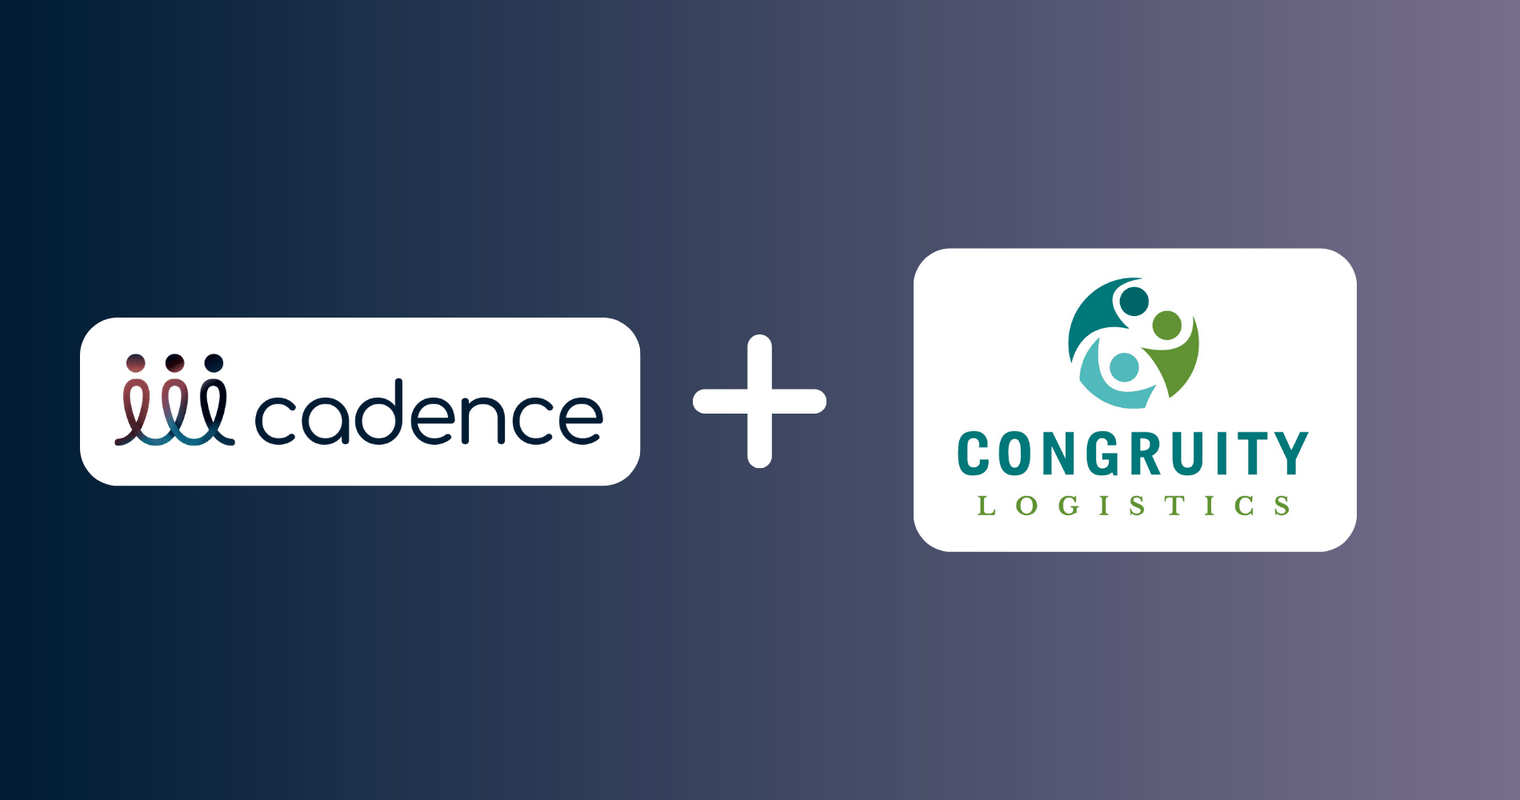 Cadence Announces Partnership with Congruity Logistics